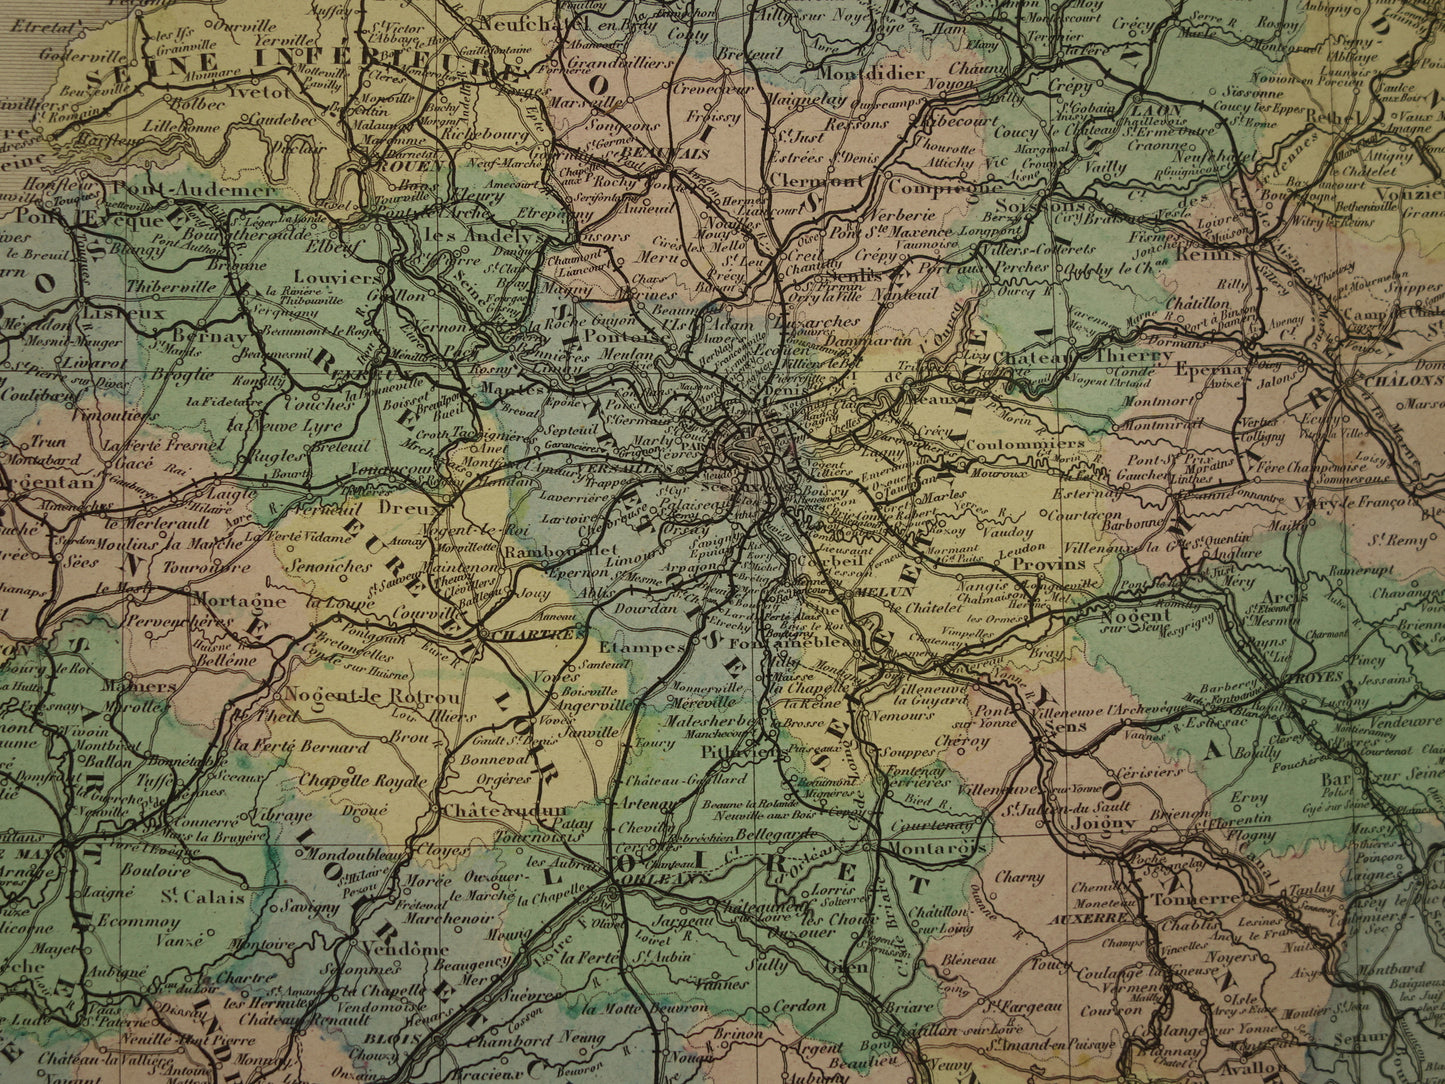 Oude landkaart van Frankrijk uit 1886 zeer grote antieke kaart Vintage handgekleurde kaarten